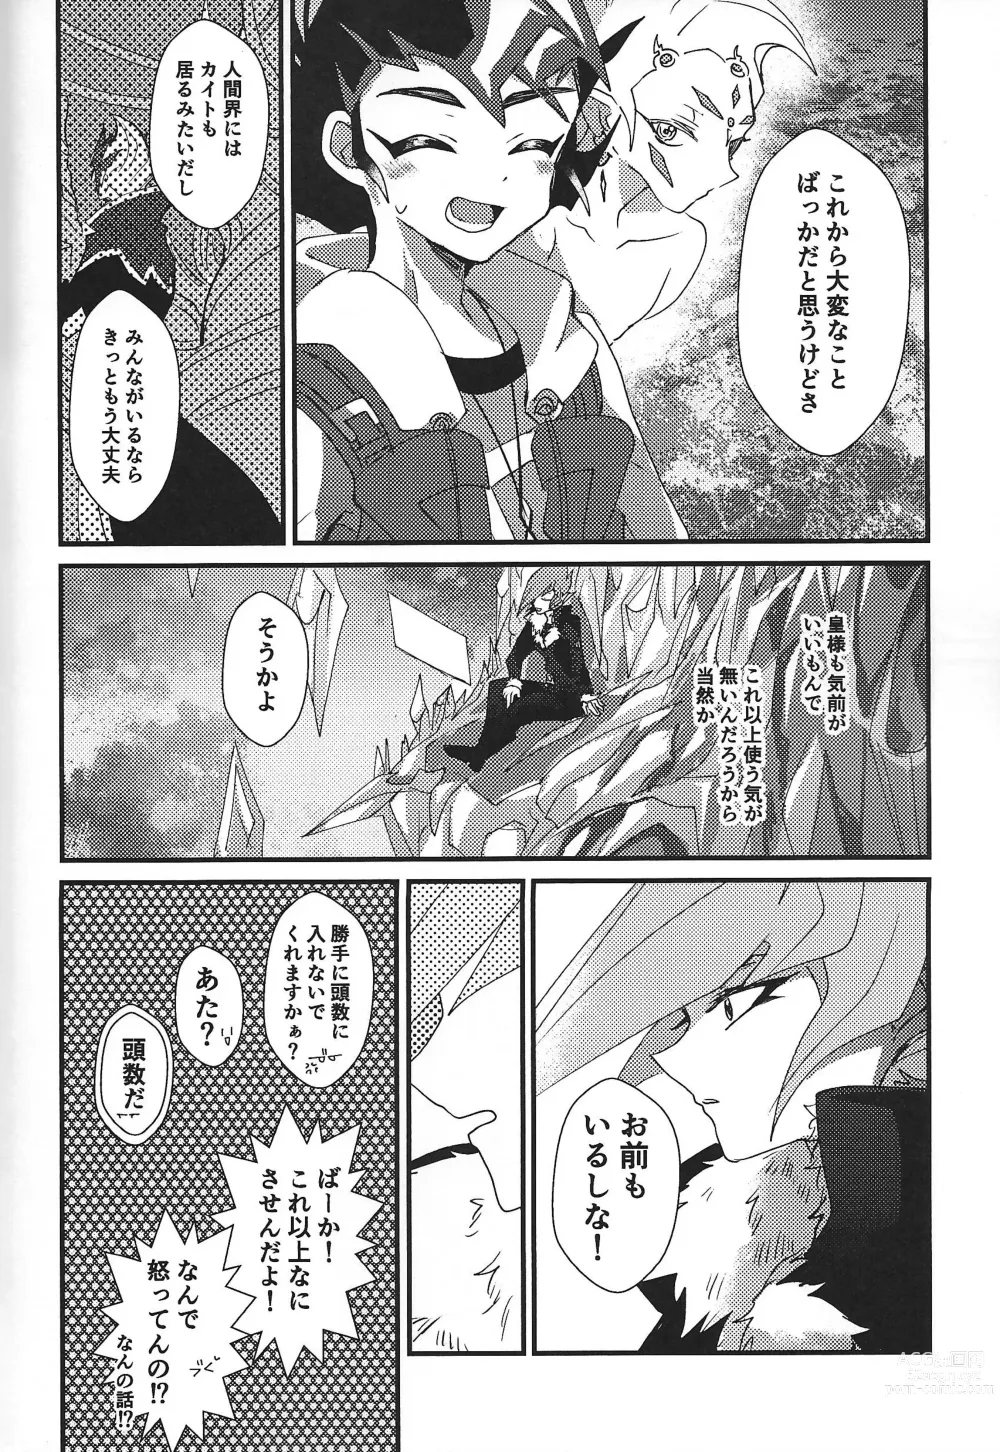 Page 112 of doujinshi ChaosPhantasma